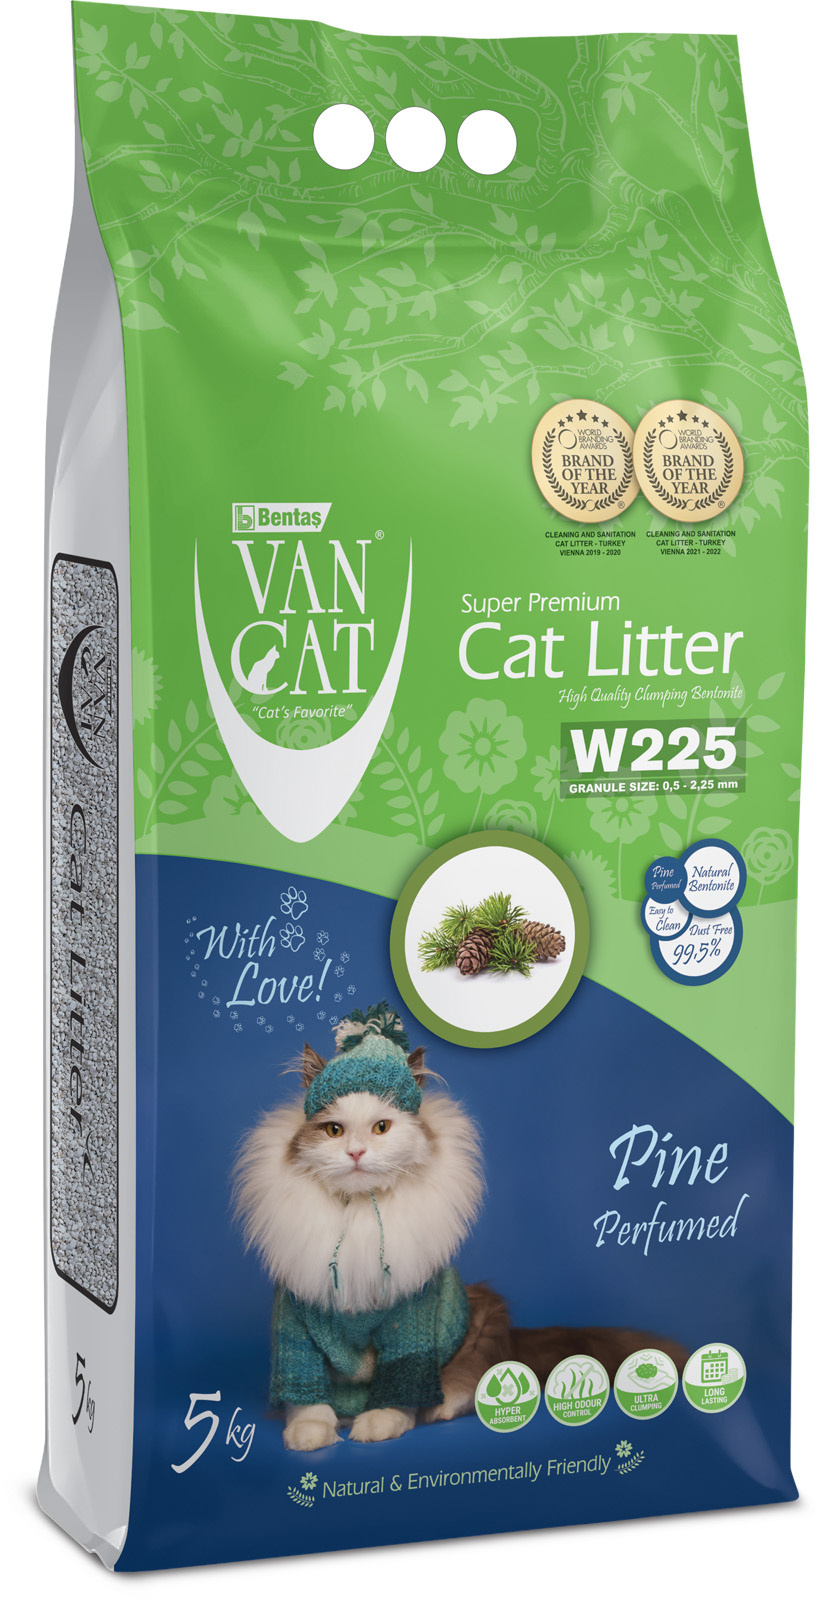 Van Cat Van Cat комкующийся наполнитель без пыли с ароматом соснового леса, пакет (5 кг) van cat van cat комкующийся наполнитель 100% натуральный без пыли пакет 5 кг